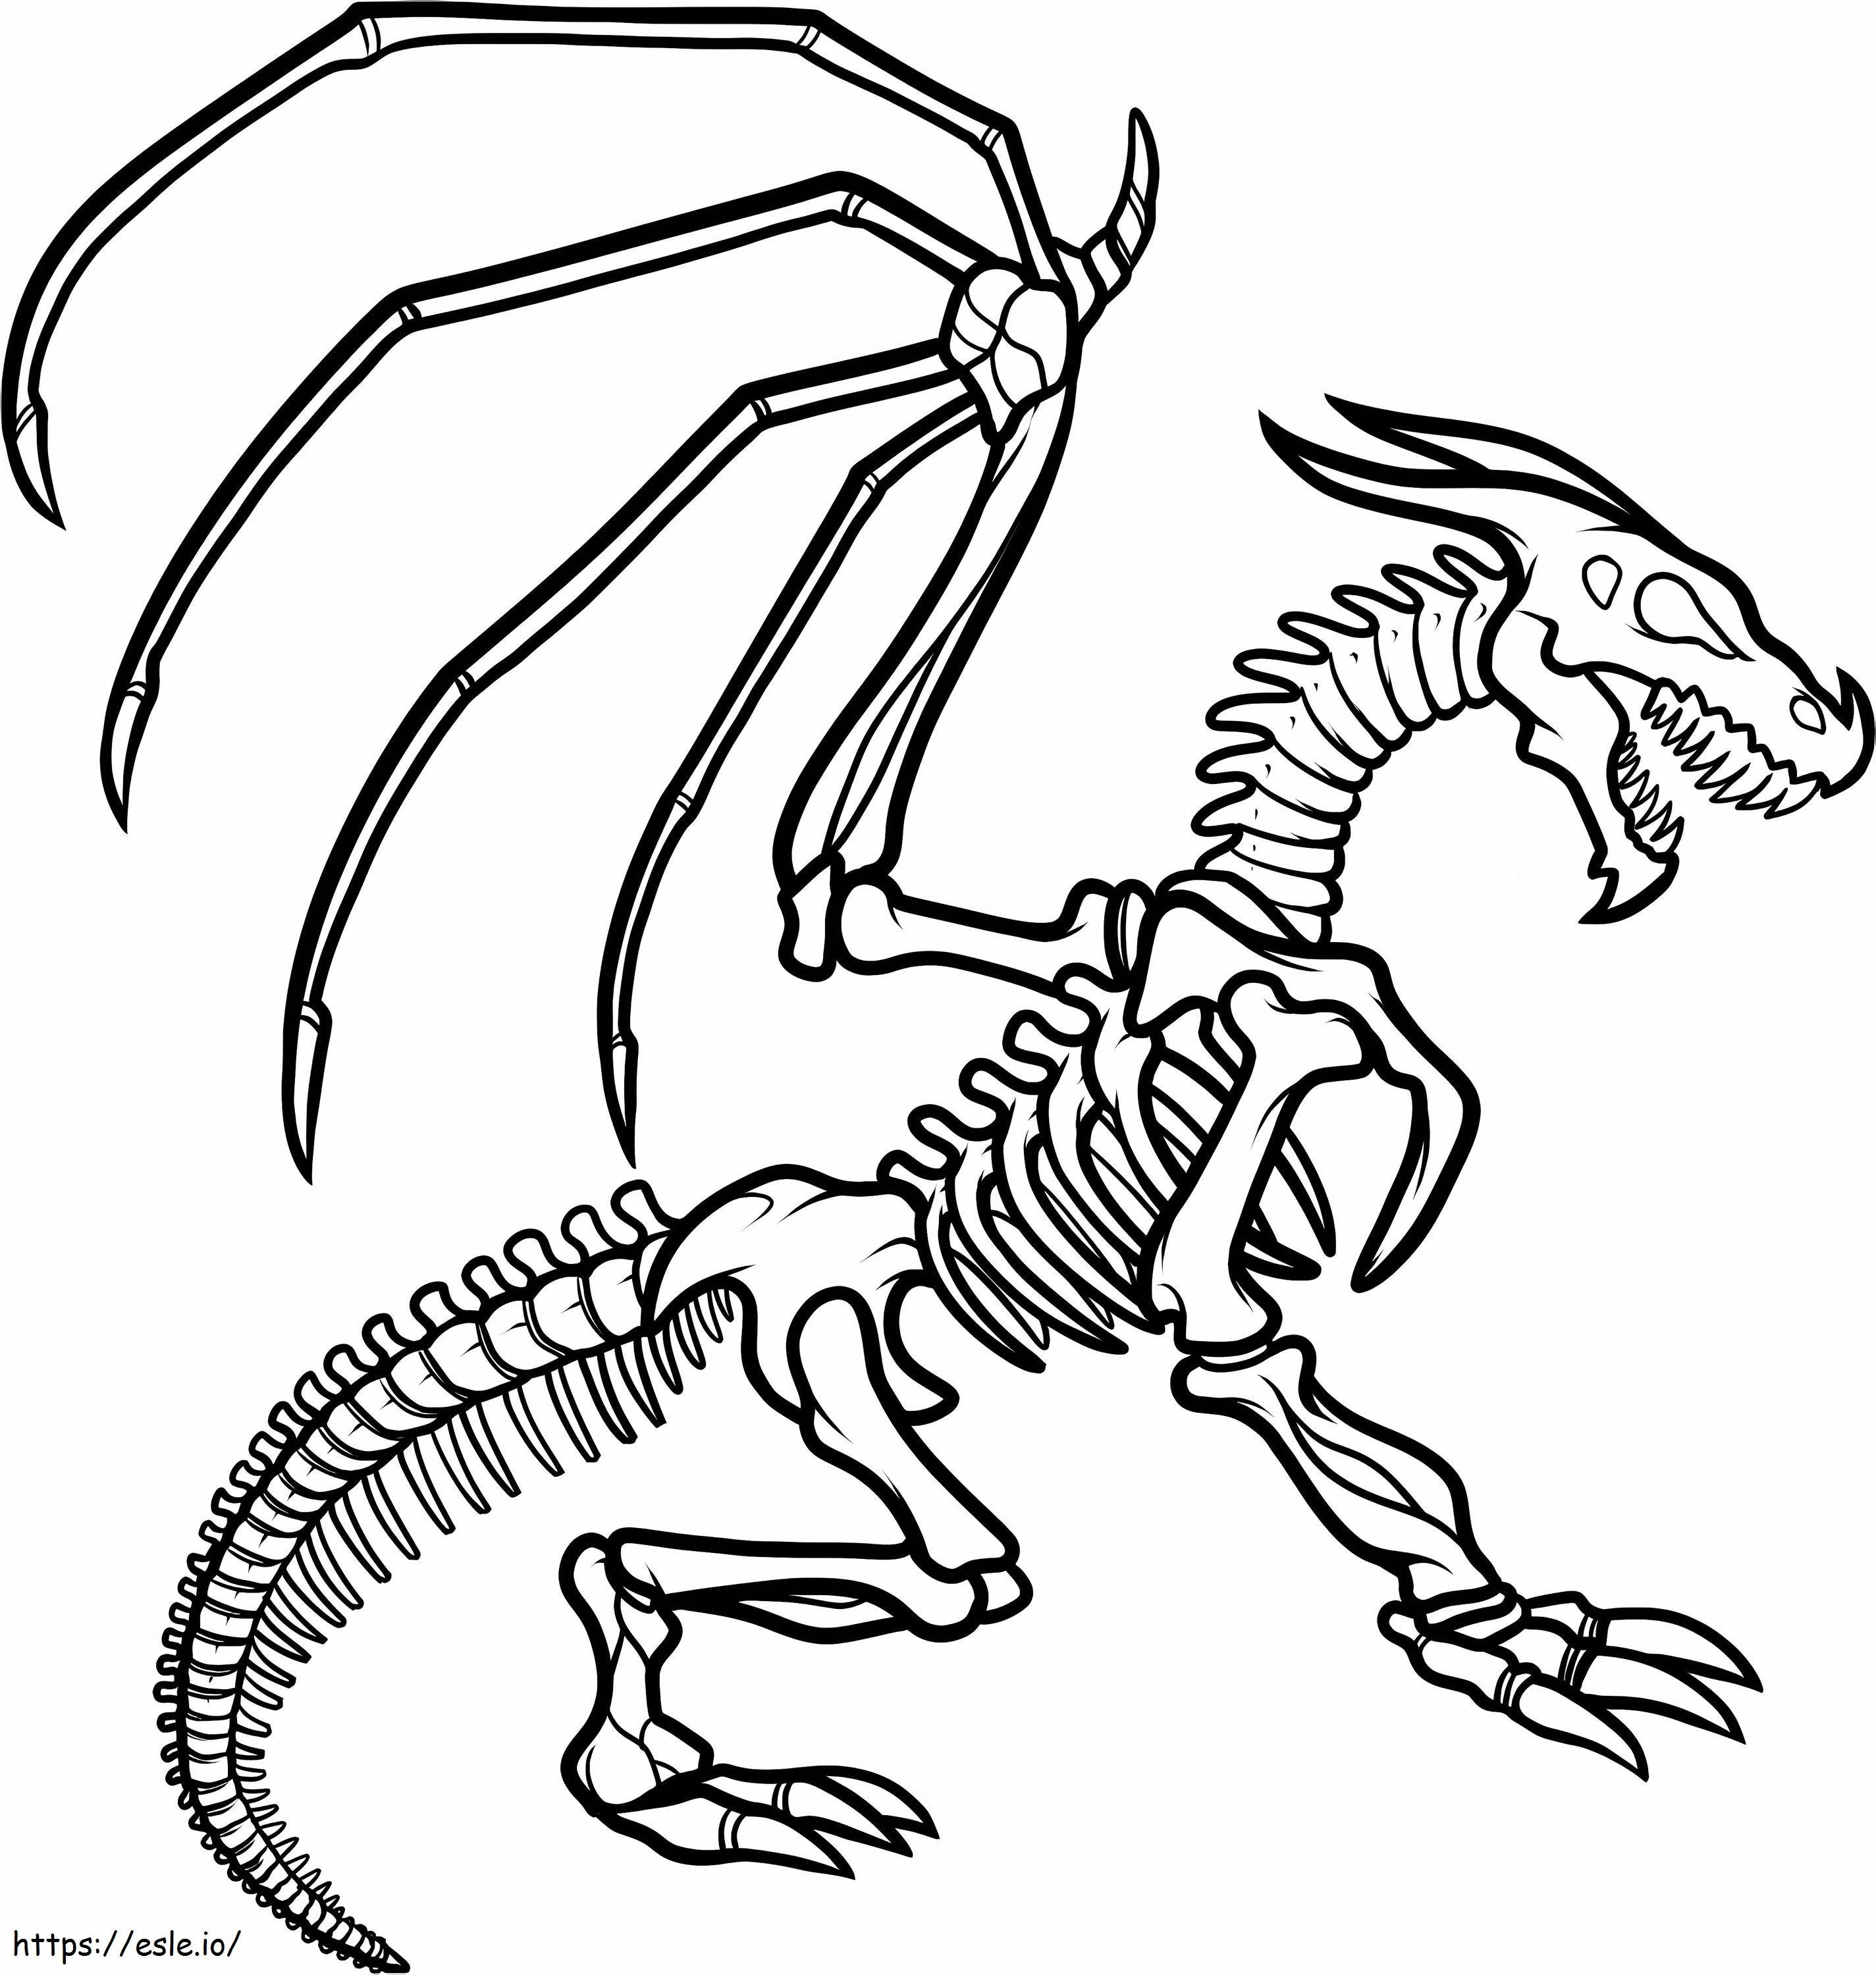 1547520862 Przedszkole Jak narysować szkielet smoka Szkielet smoka Autor: Ilovepacsterandclyde D8Jkzcq kolorowanka